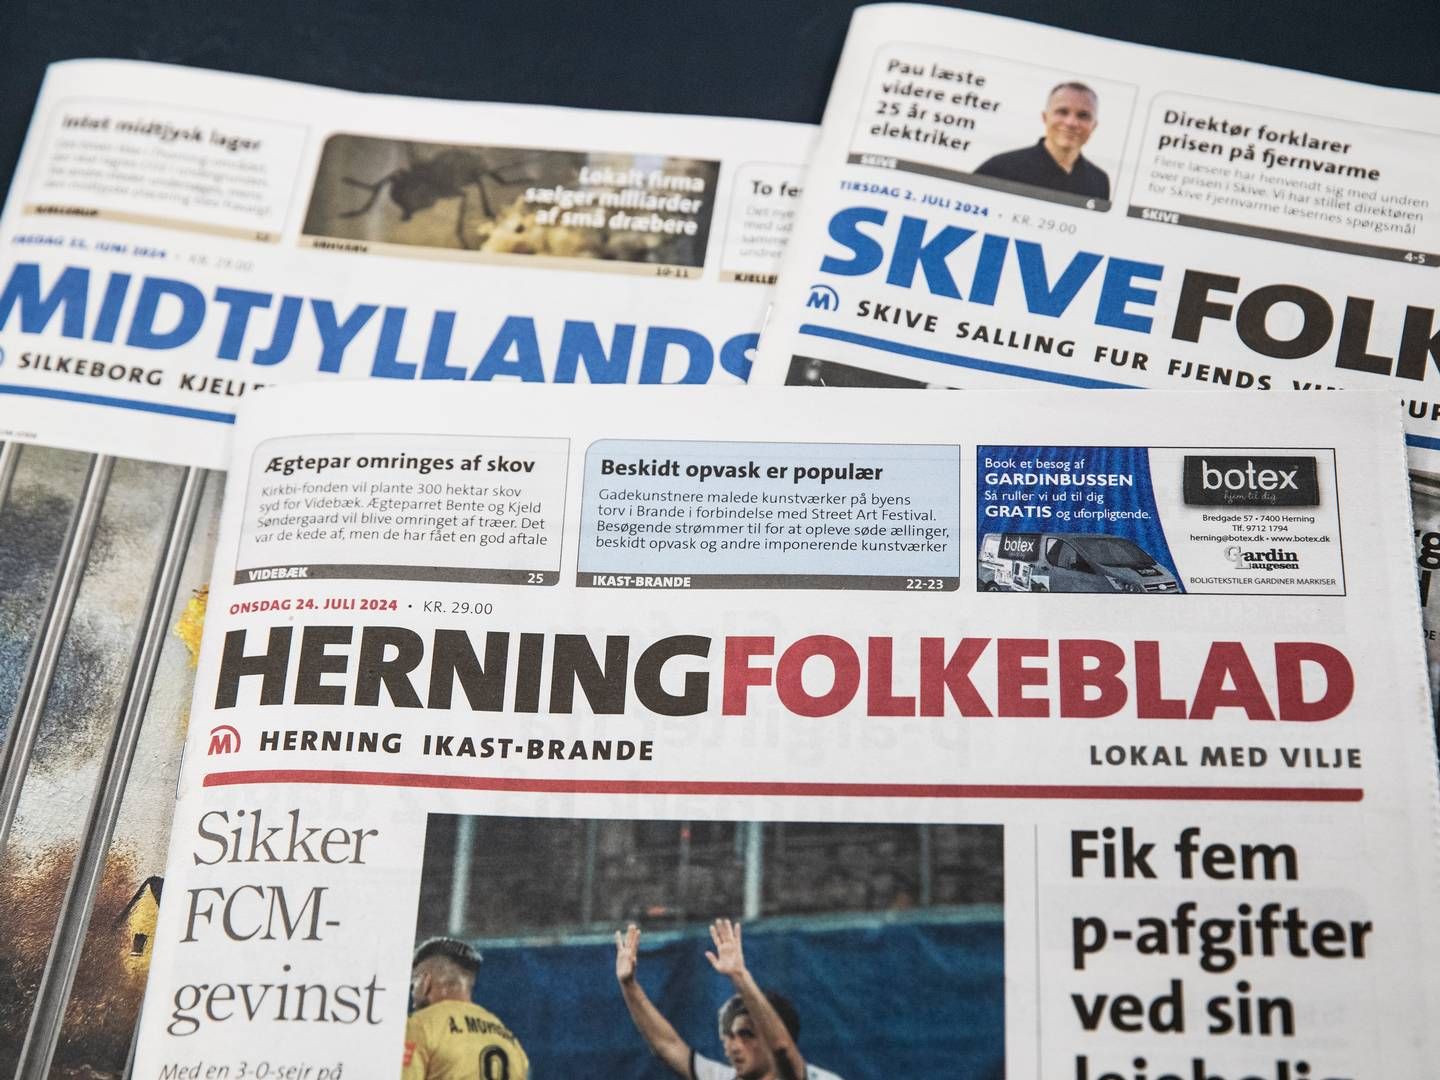 Herning Folkeblad, Midtjyllands Avis og Skive Folkeblad bliver fra 1. september morgenaviser. | Foto: Malene Korsgaard/mediehusene Midtjylland